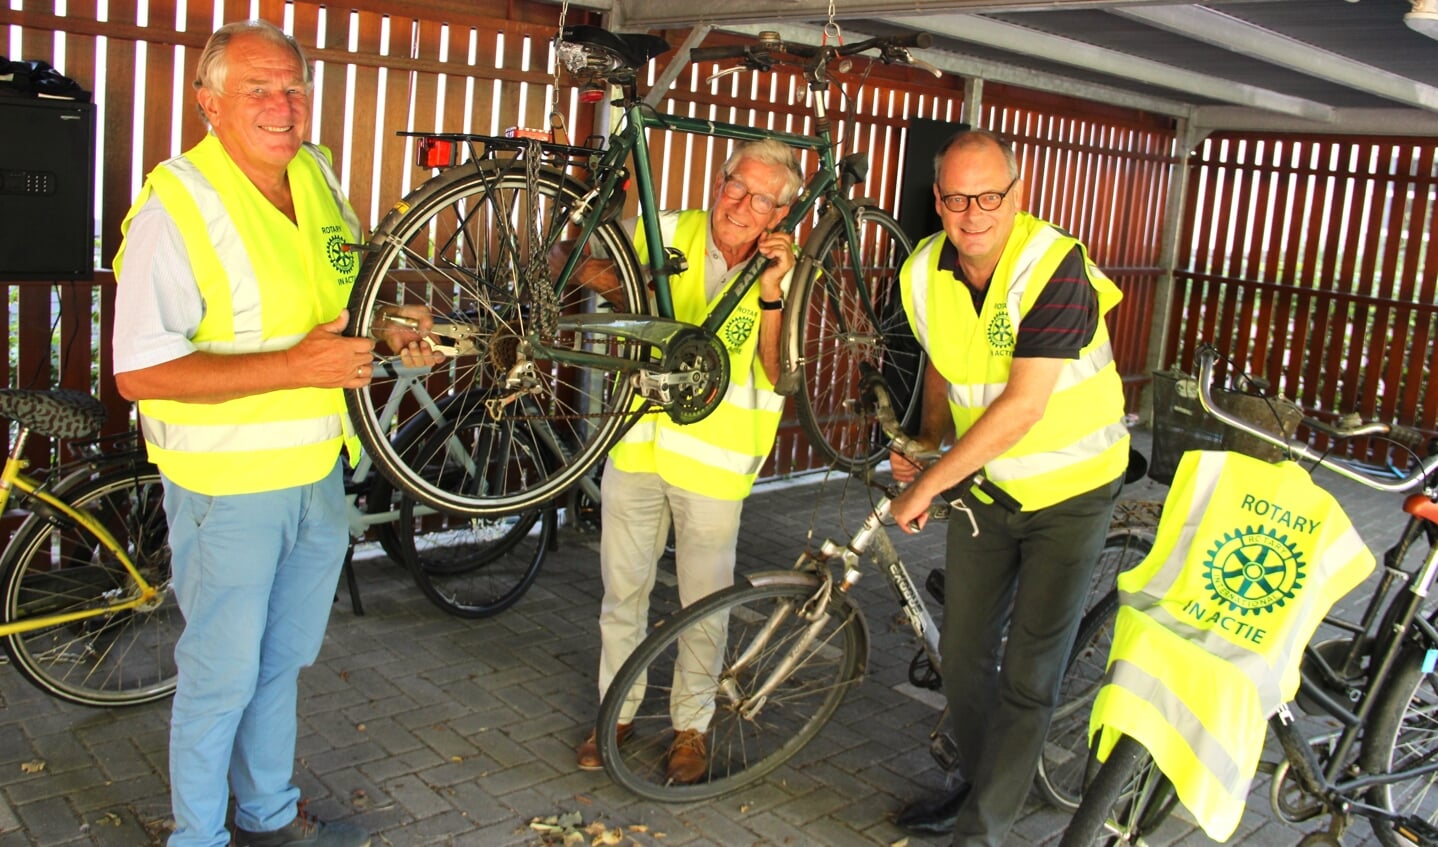 De eerste fietsen worden onder handen genomen door Rob Nout, Paul Francissen en Volker Dohne (van links naar rechts).